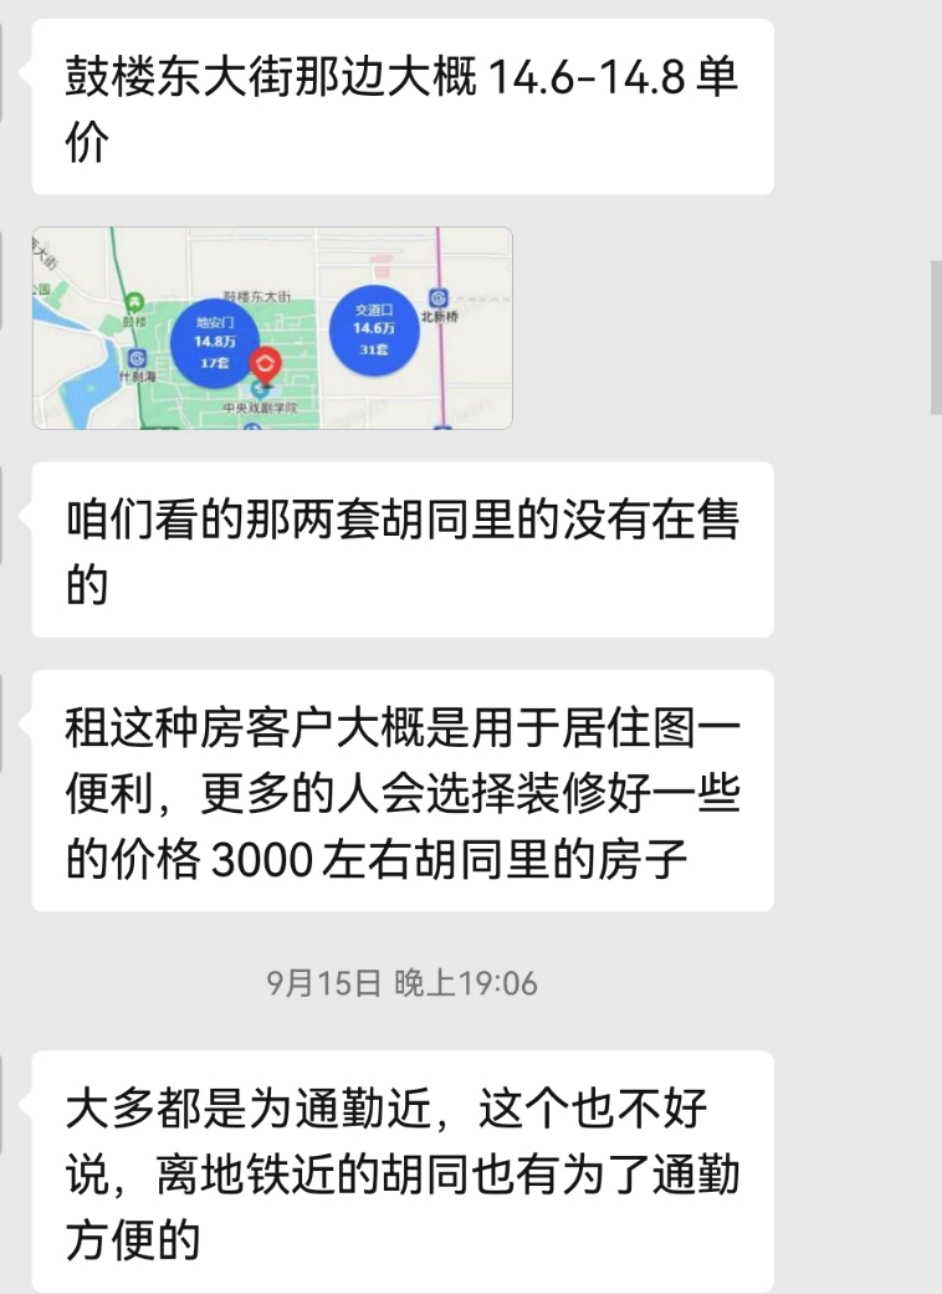 江汉艺术职业学院租场地_租场地app_公园租场地条件